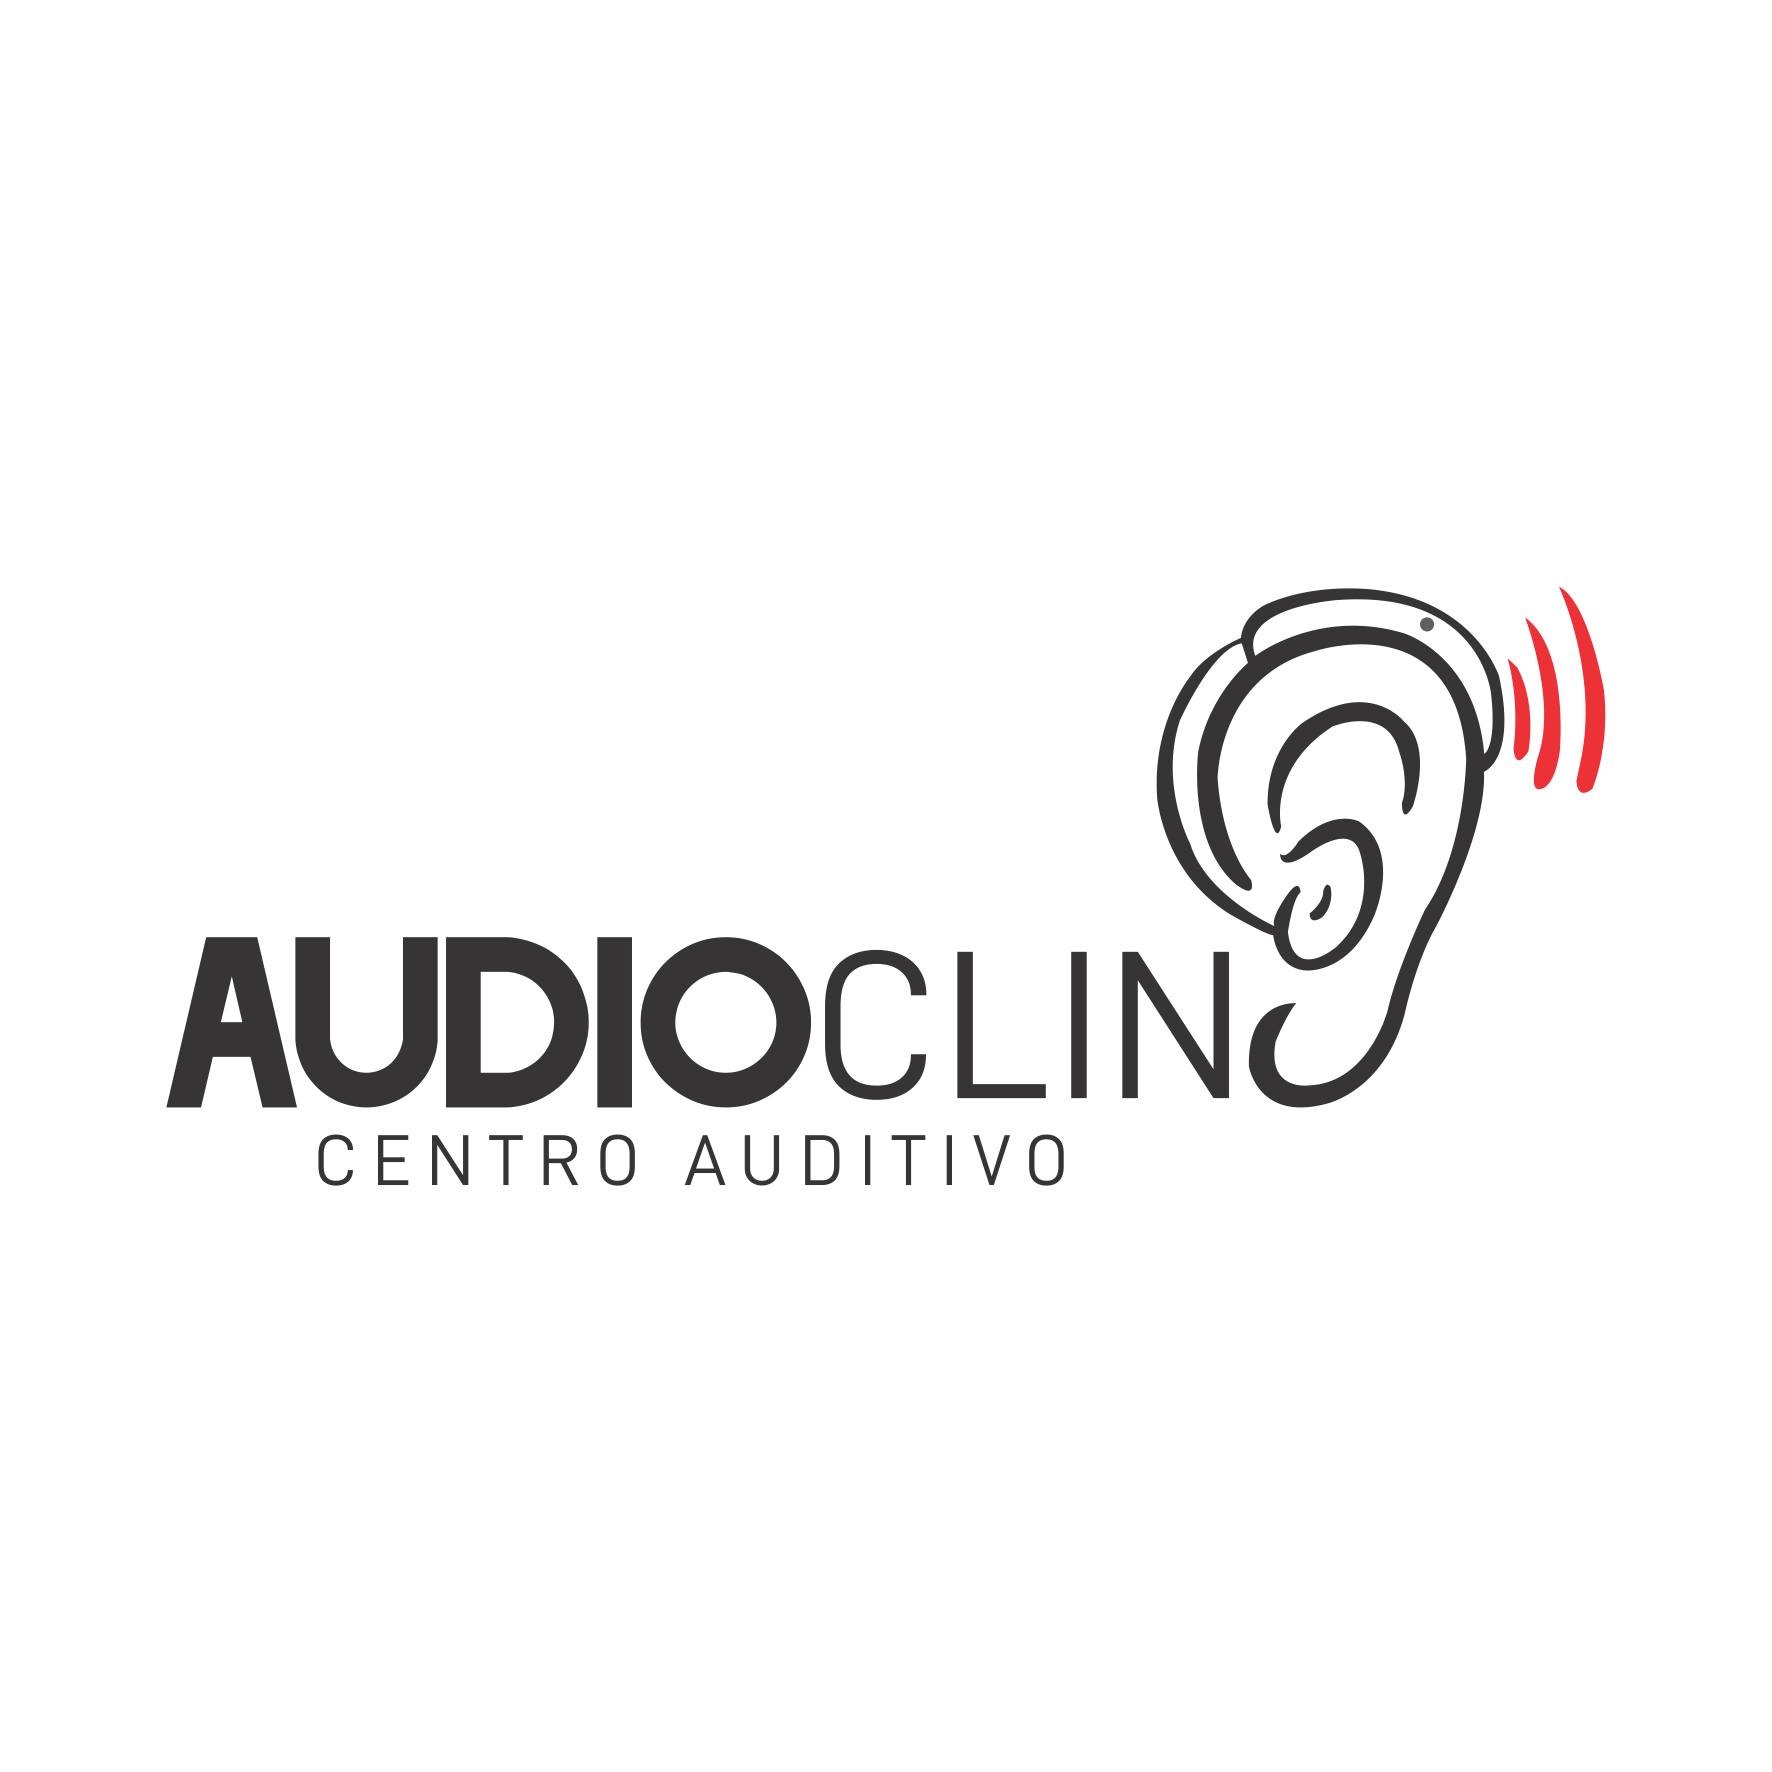 Audioclin